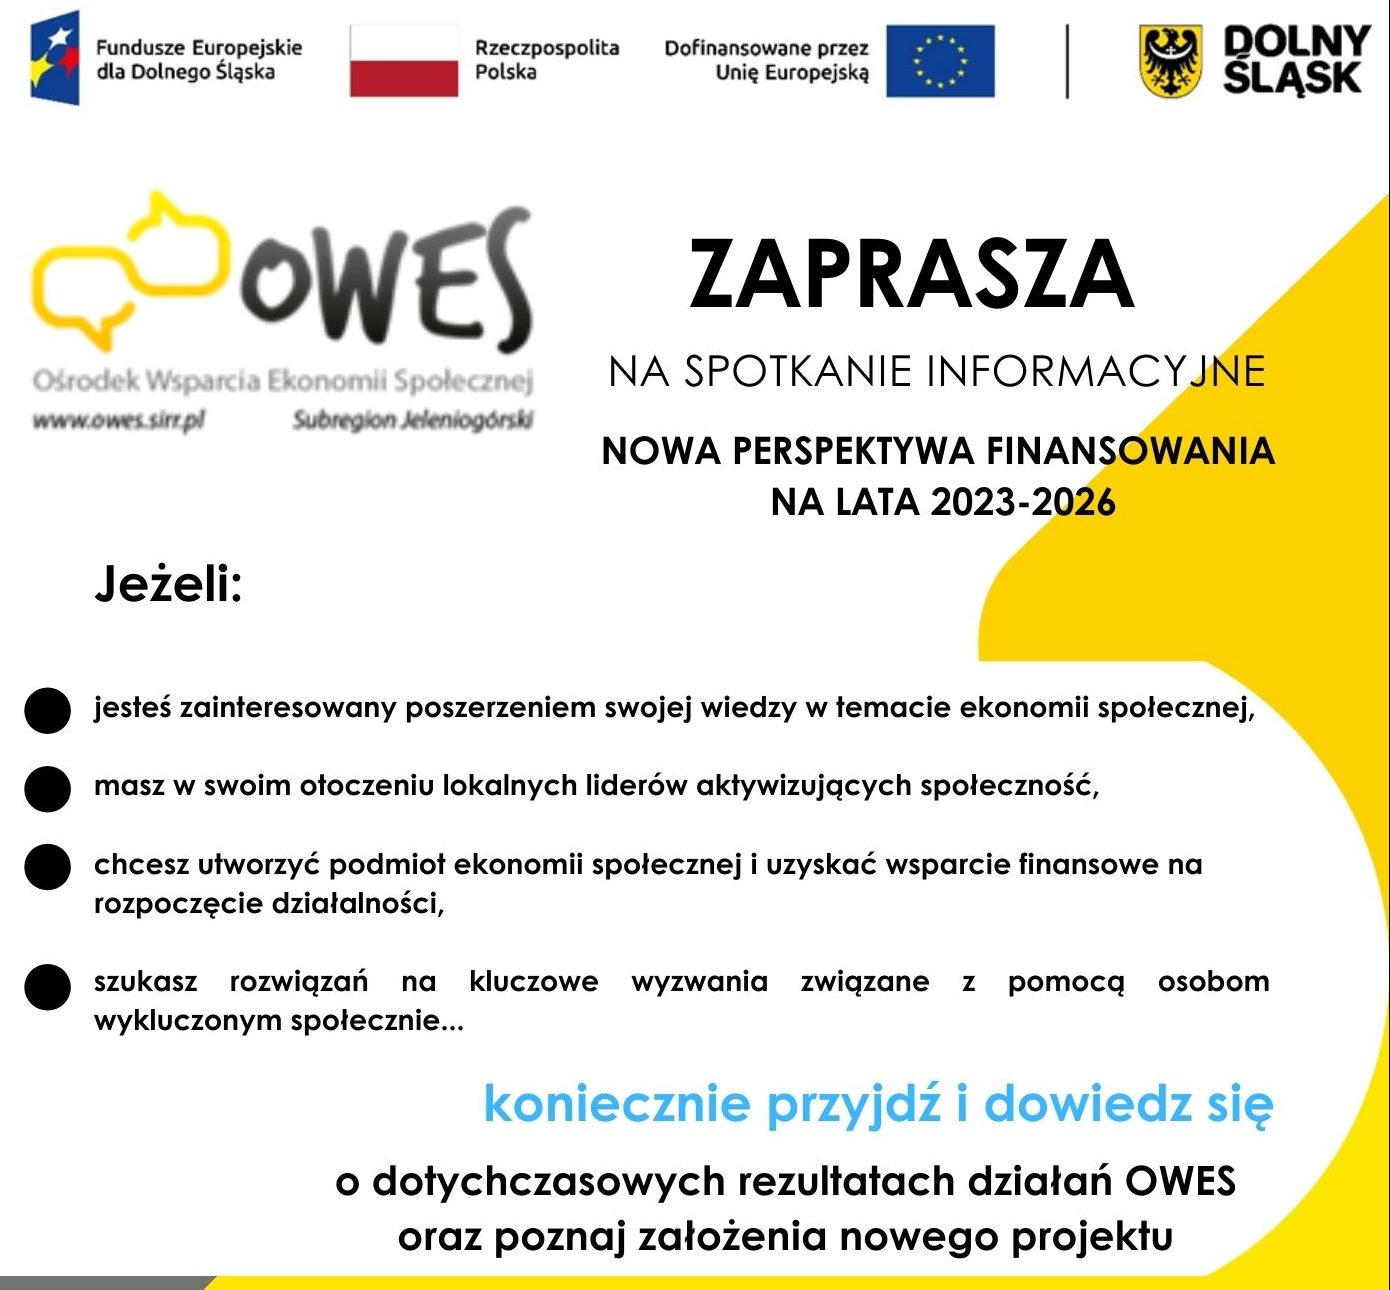 Przyszłość ekonomii społecznej w Zgorzelcu – spotkanie informacyjne OWES